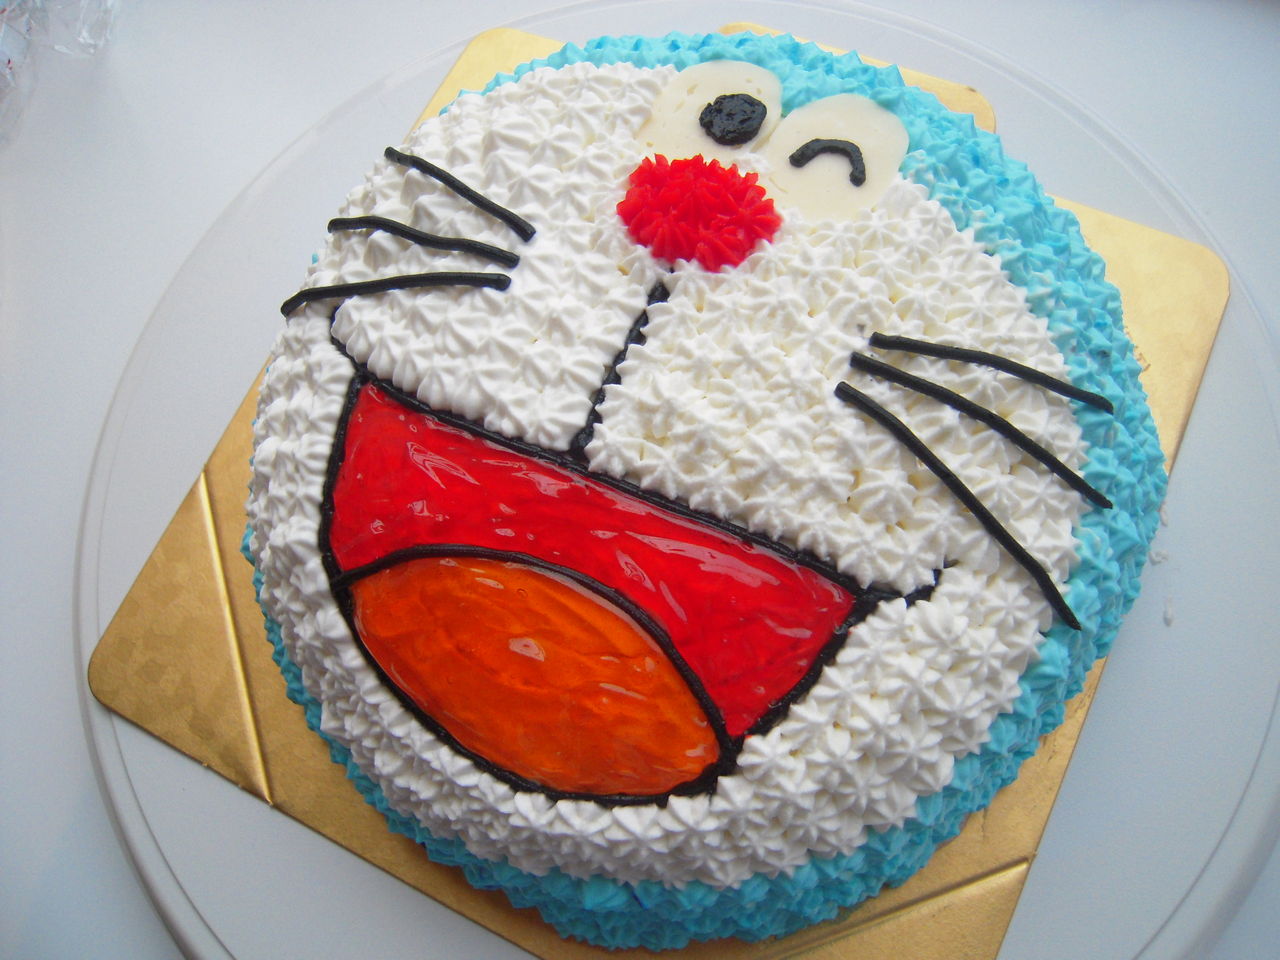 キャラクターケーキ どらえもん Atelier La Four 小さなお菓子のアトリエ Icingcookie Bake Shop 焼き菓子 ｱｲｼﾝｸﾞｸｯｷｰ バースデーケーキの販売 小さなお菓子教室